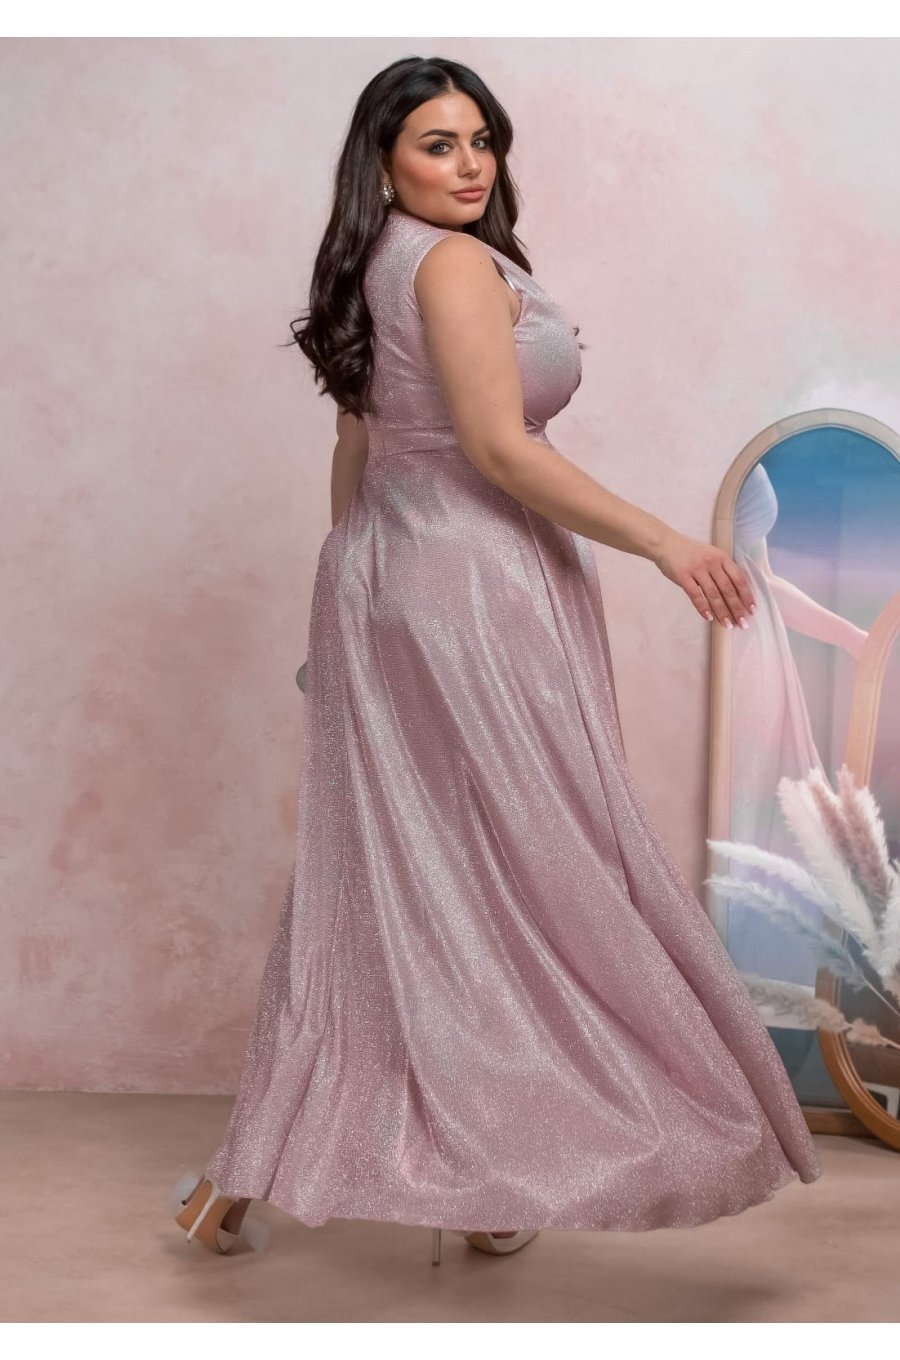 Rochie eleganta in marimi mari, lunga, din bumbac cu glitter, roz prafuit, crapata pe picior, AmandaW 2 - jojofashion.ro